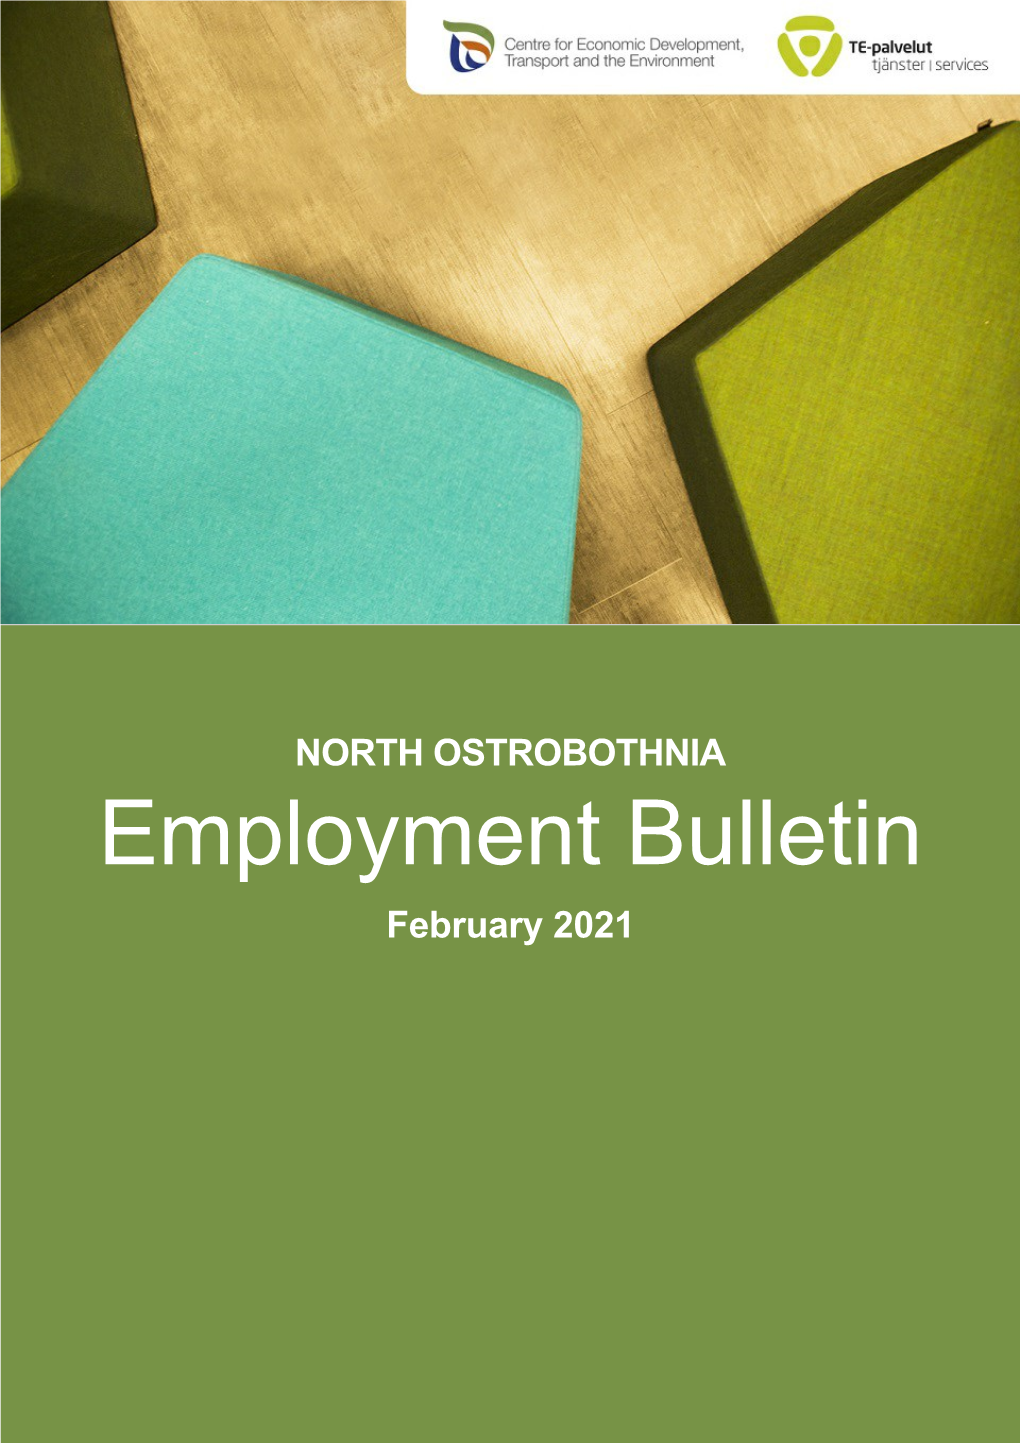 Employment Bulletin February 2021 NORTH OSTROBOTHNIA